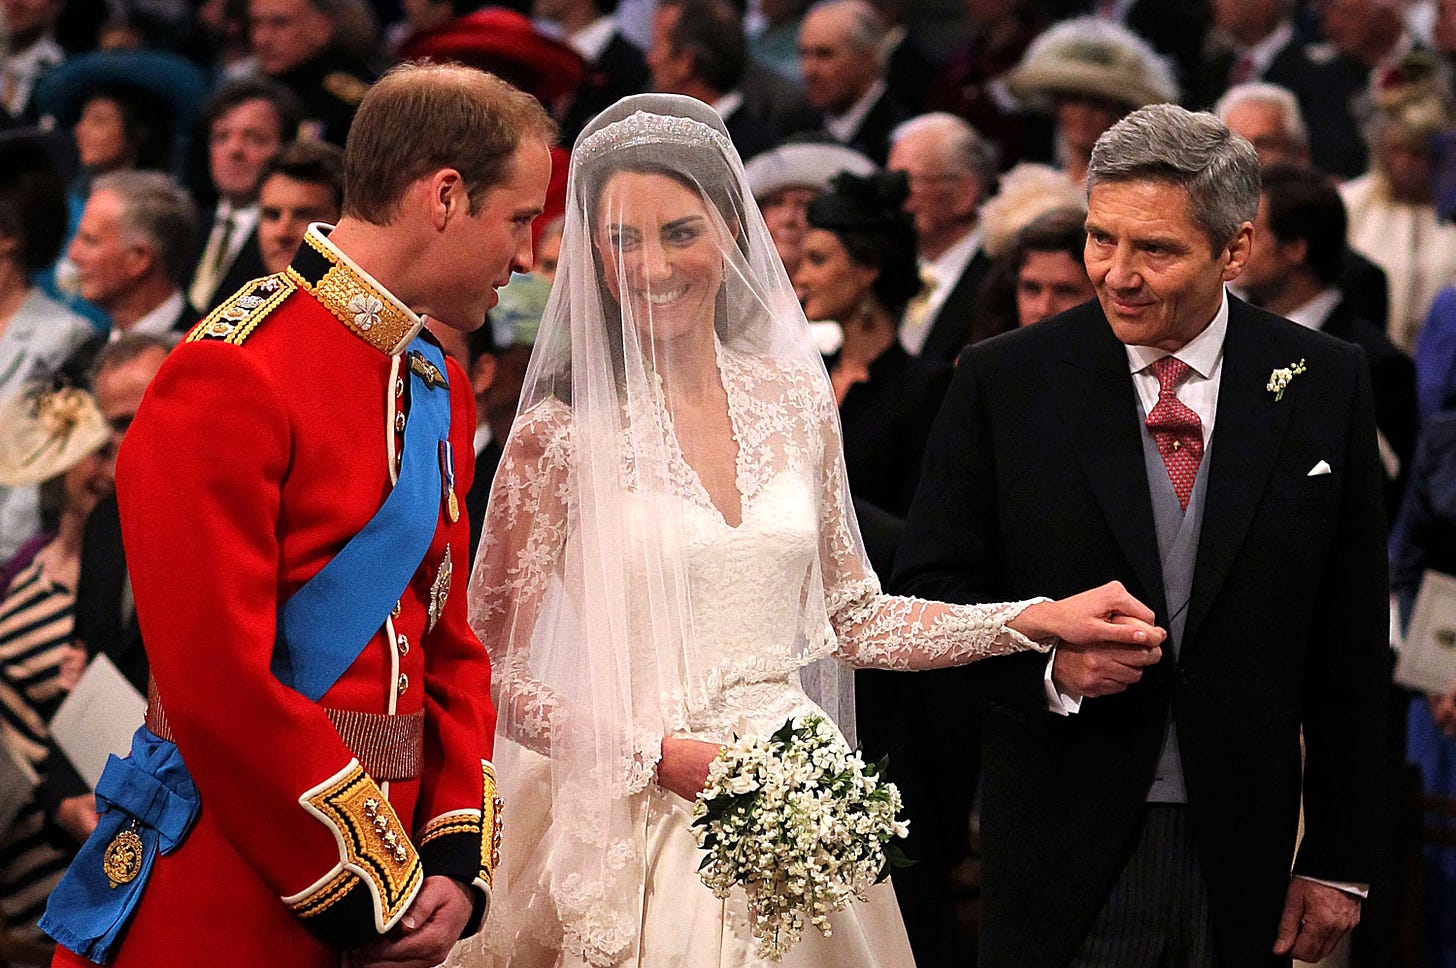 michael middleton gives daughter kate away at 2011 royal wedding